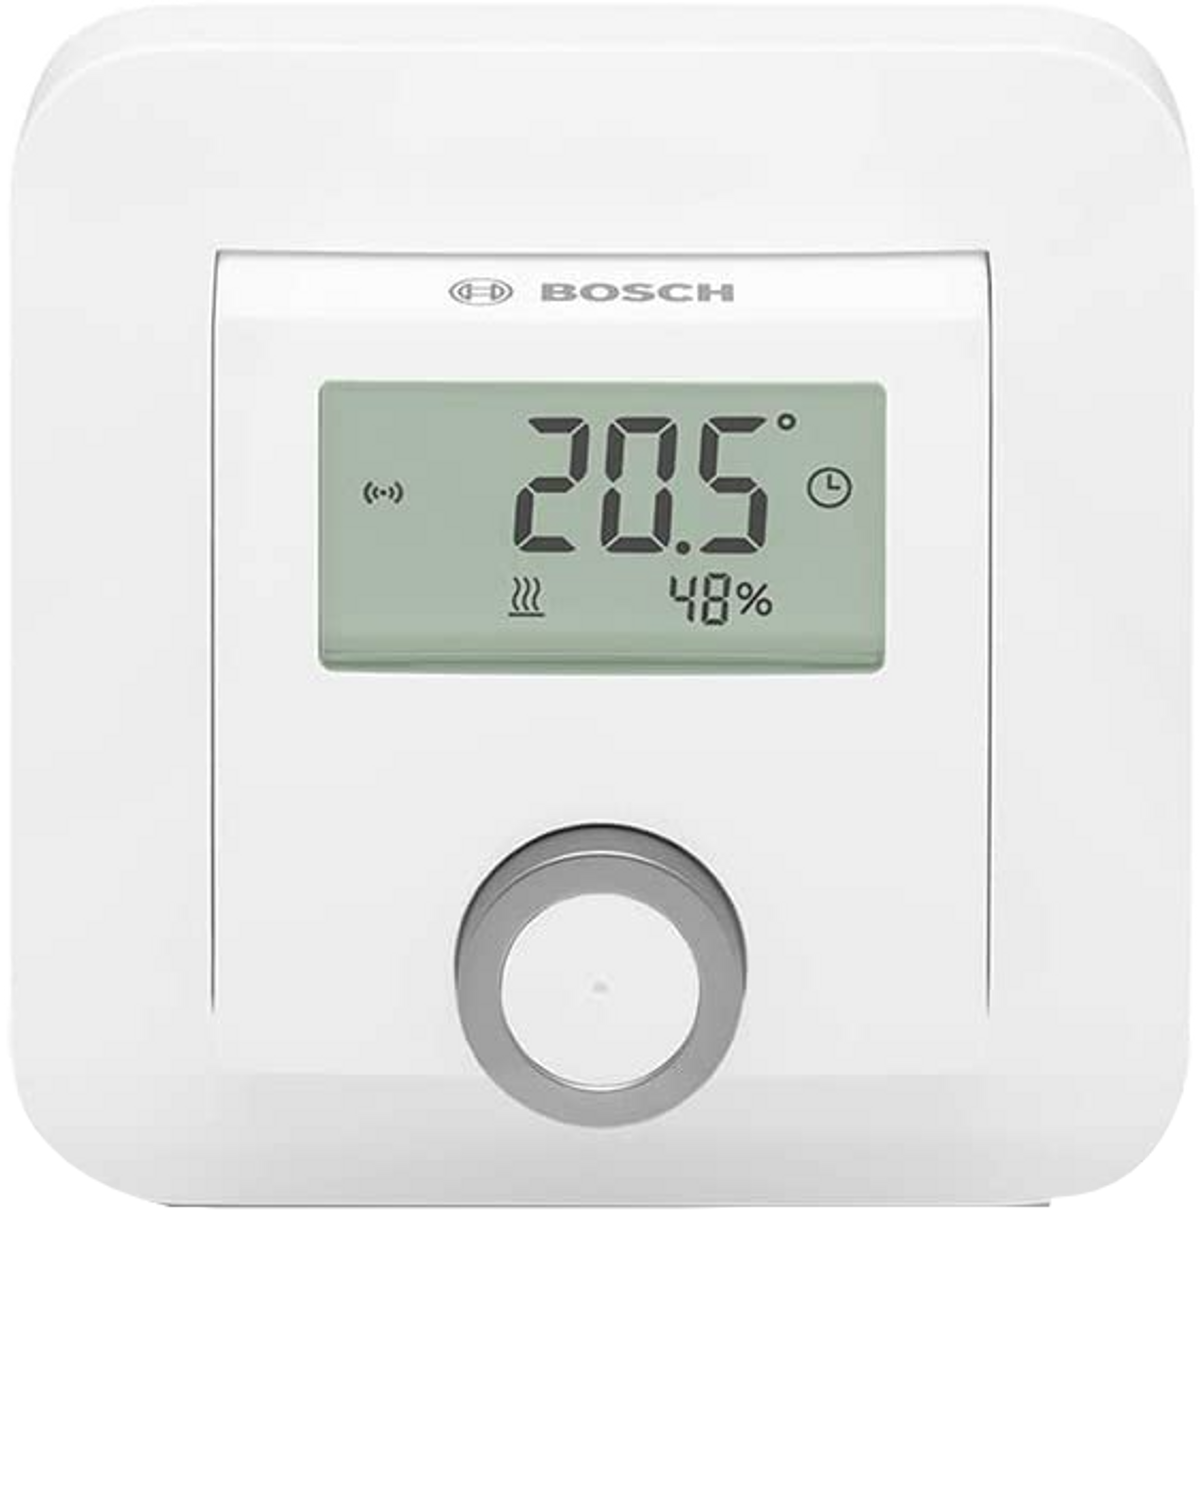 Bosch Smart Home termostato de ambiente 2 pilas aaa para radiador visualizador humedad incluido compatible con el asistente google y alexa 55004301